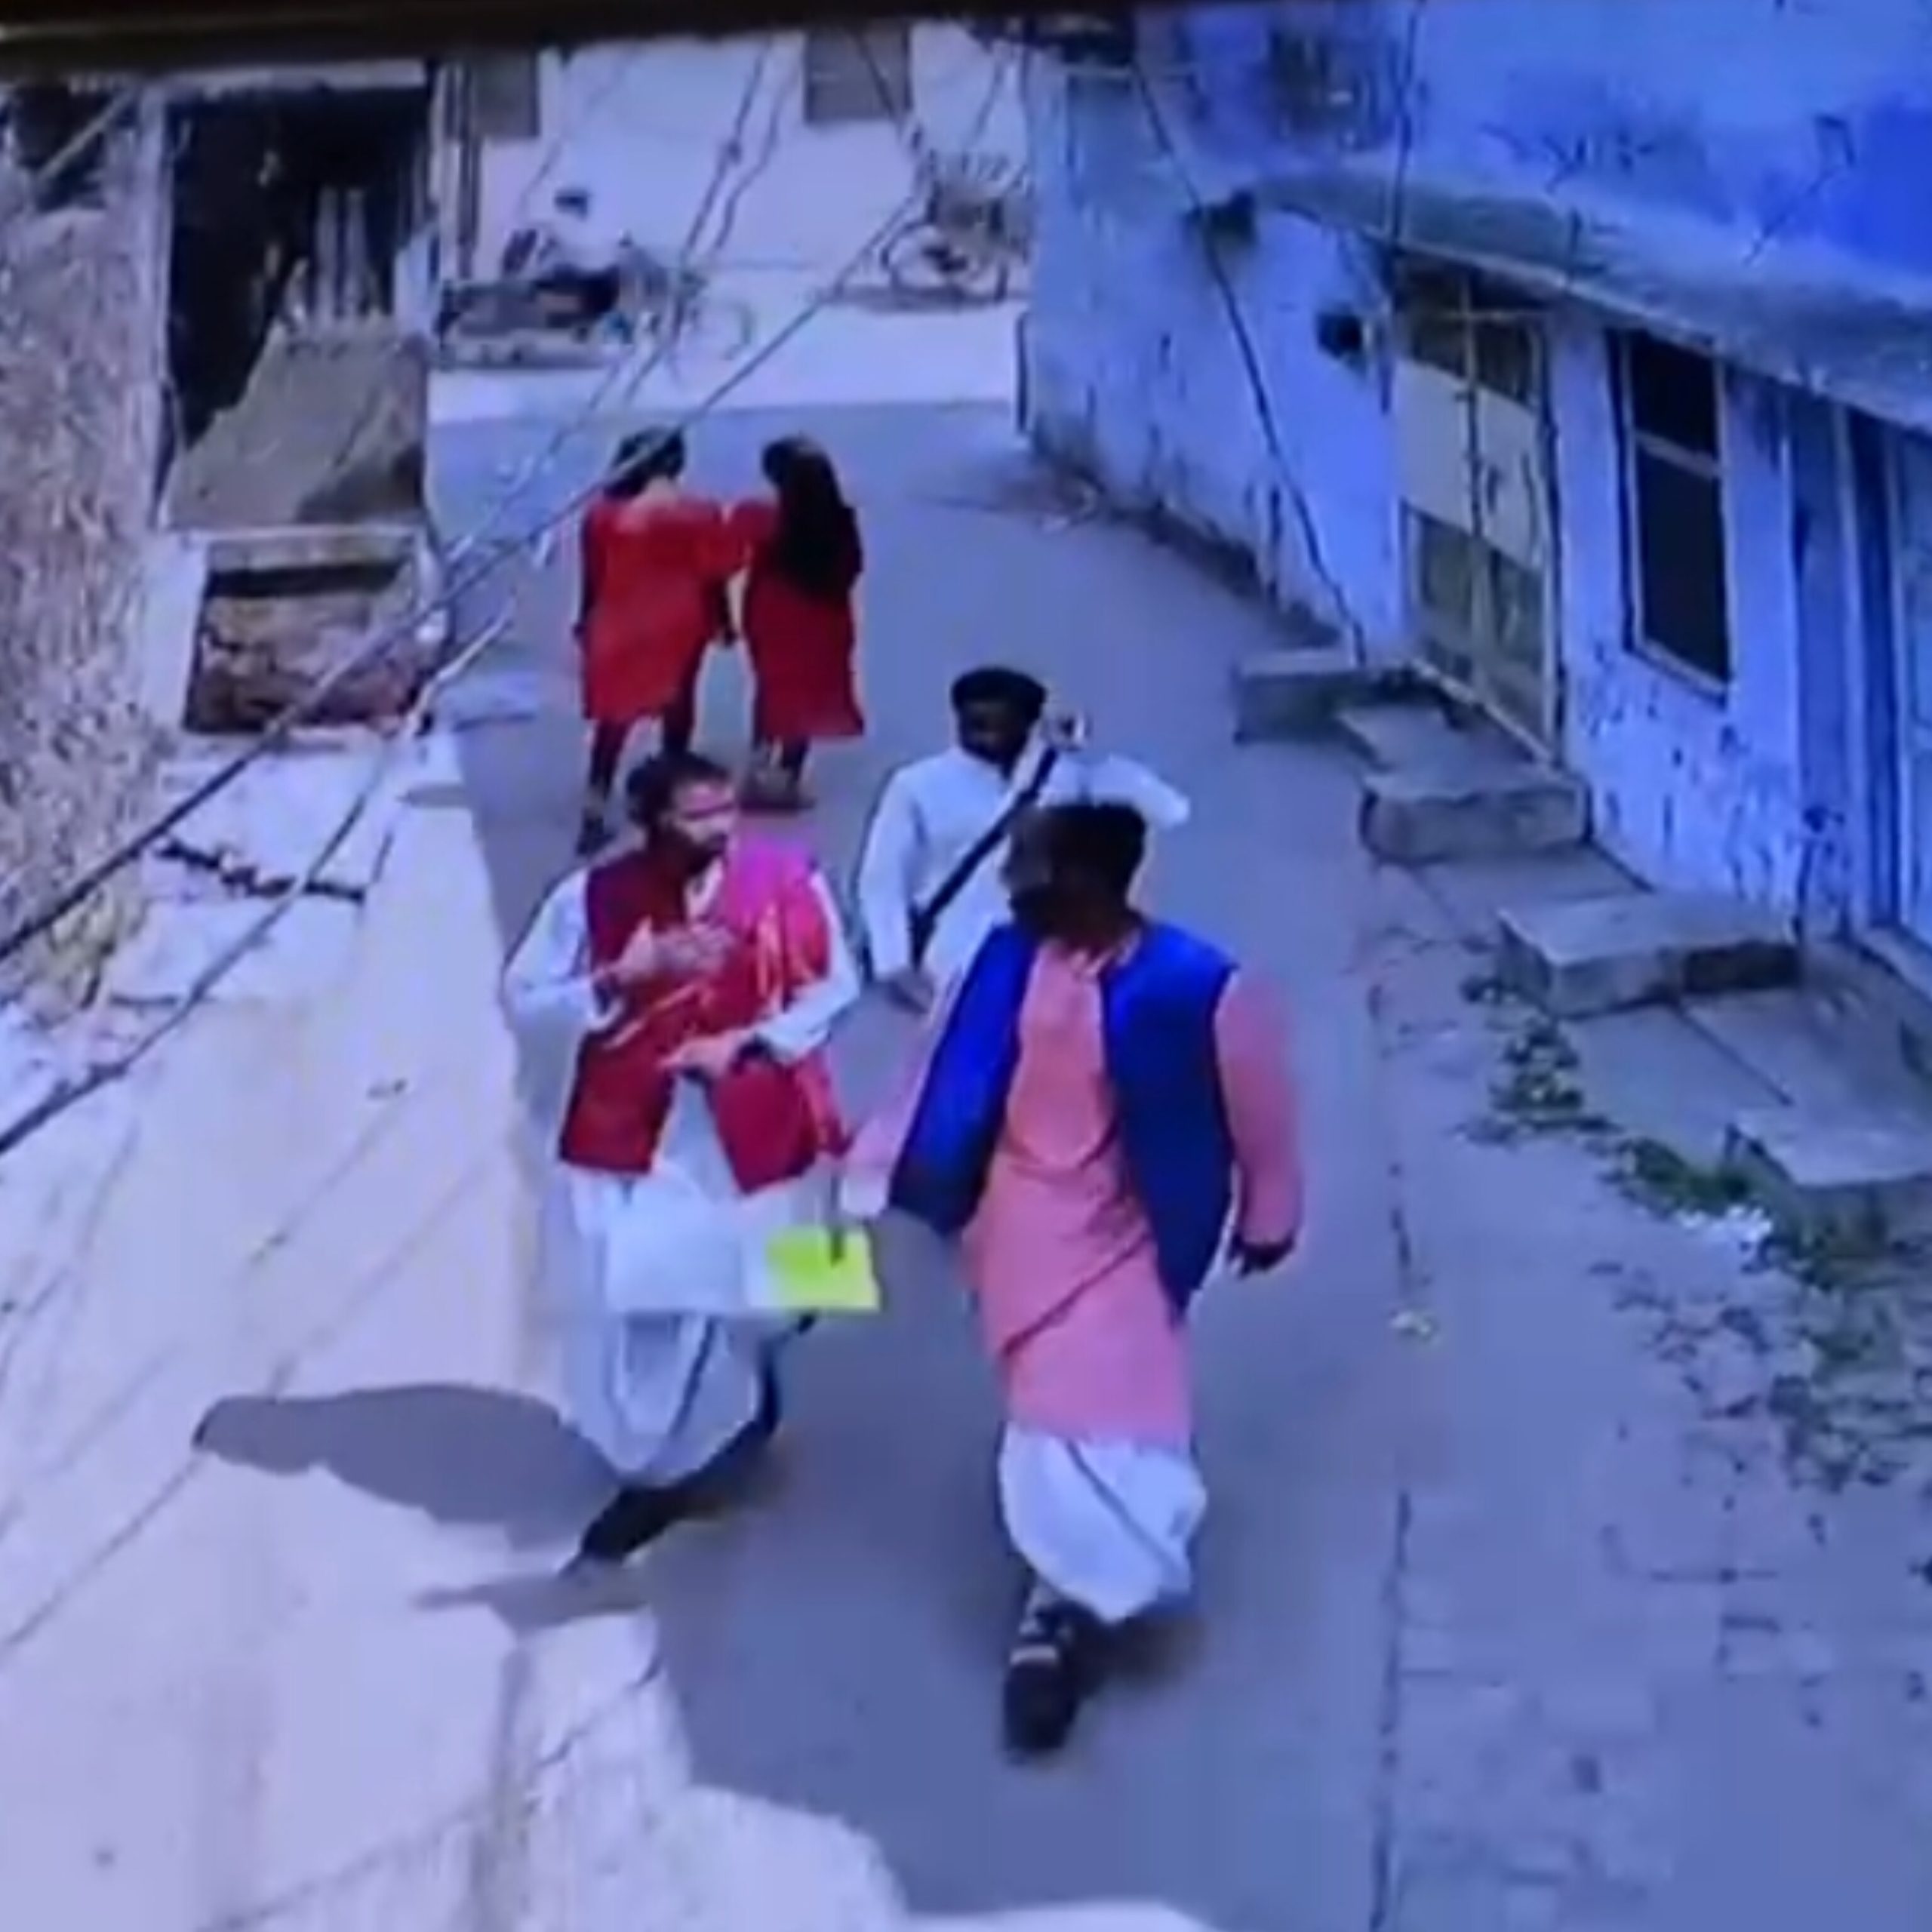 सरसों फेंक करते हैं बेहोश, लूटकर हो जाते हैं फरार:मुजफ्फरपुर में साधु के वेश में घूम रहे लुटेरे, महिलाएं होती हैं निशाने पर